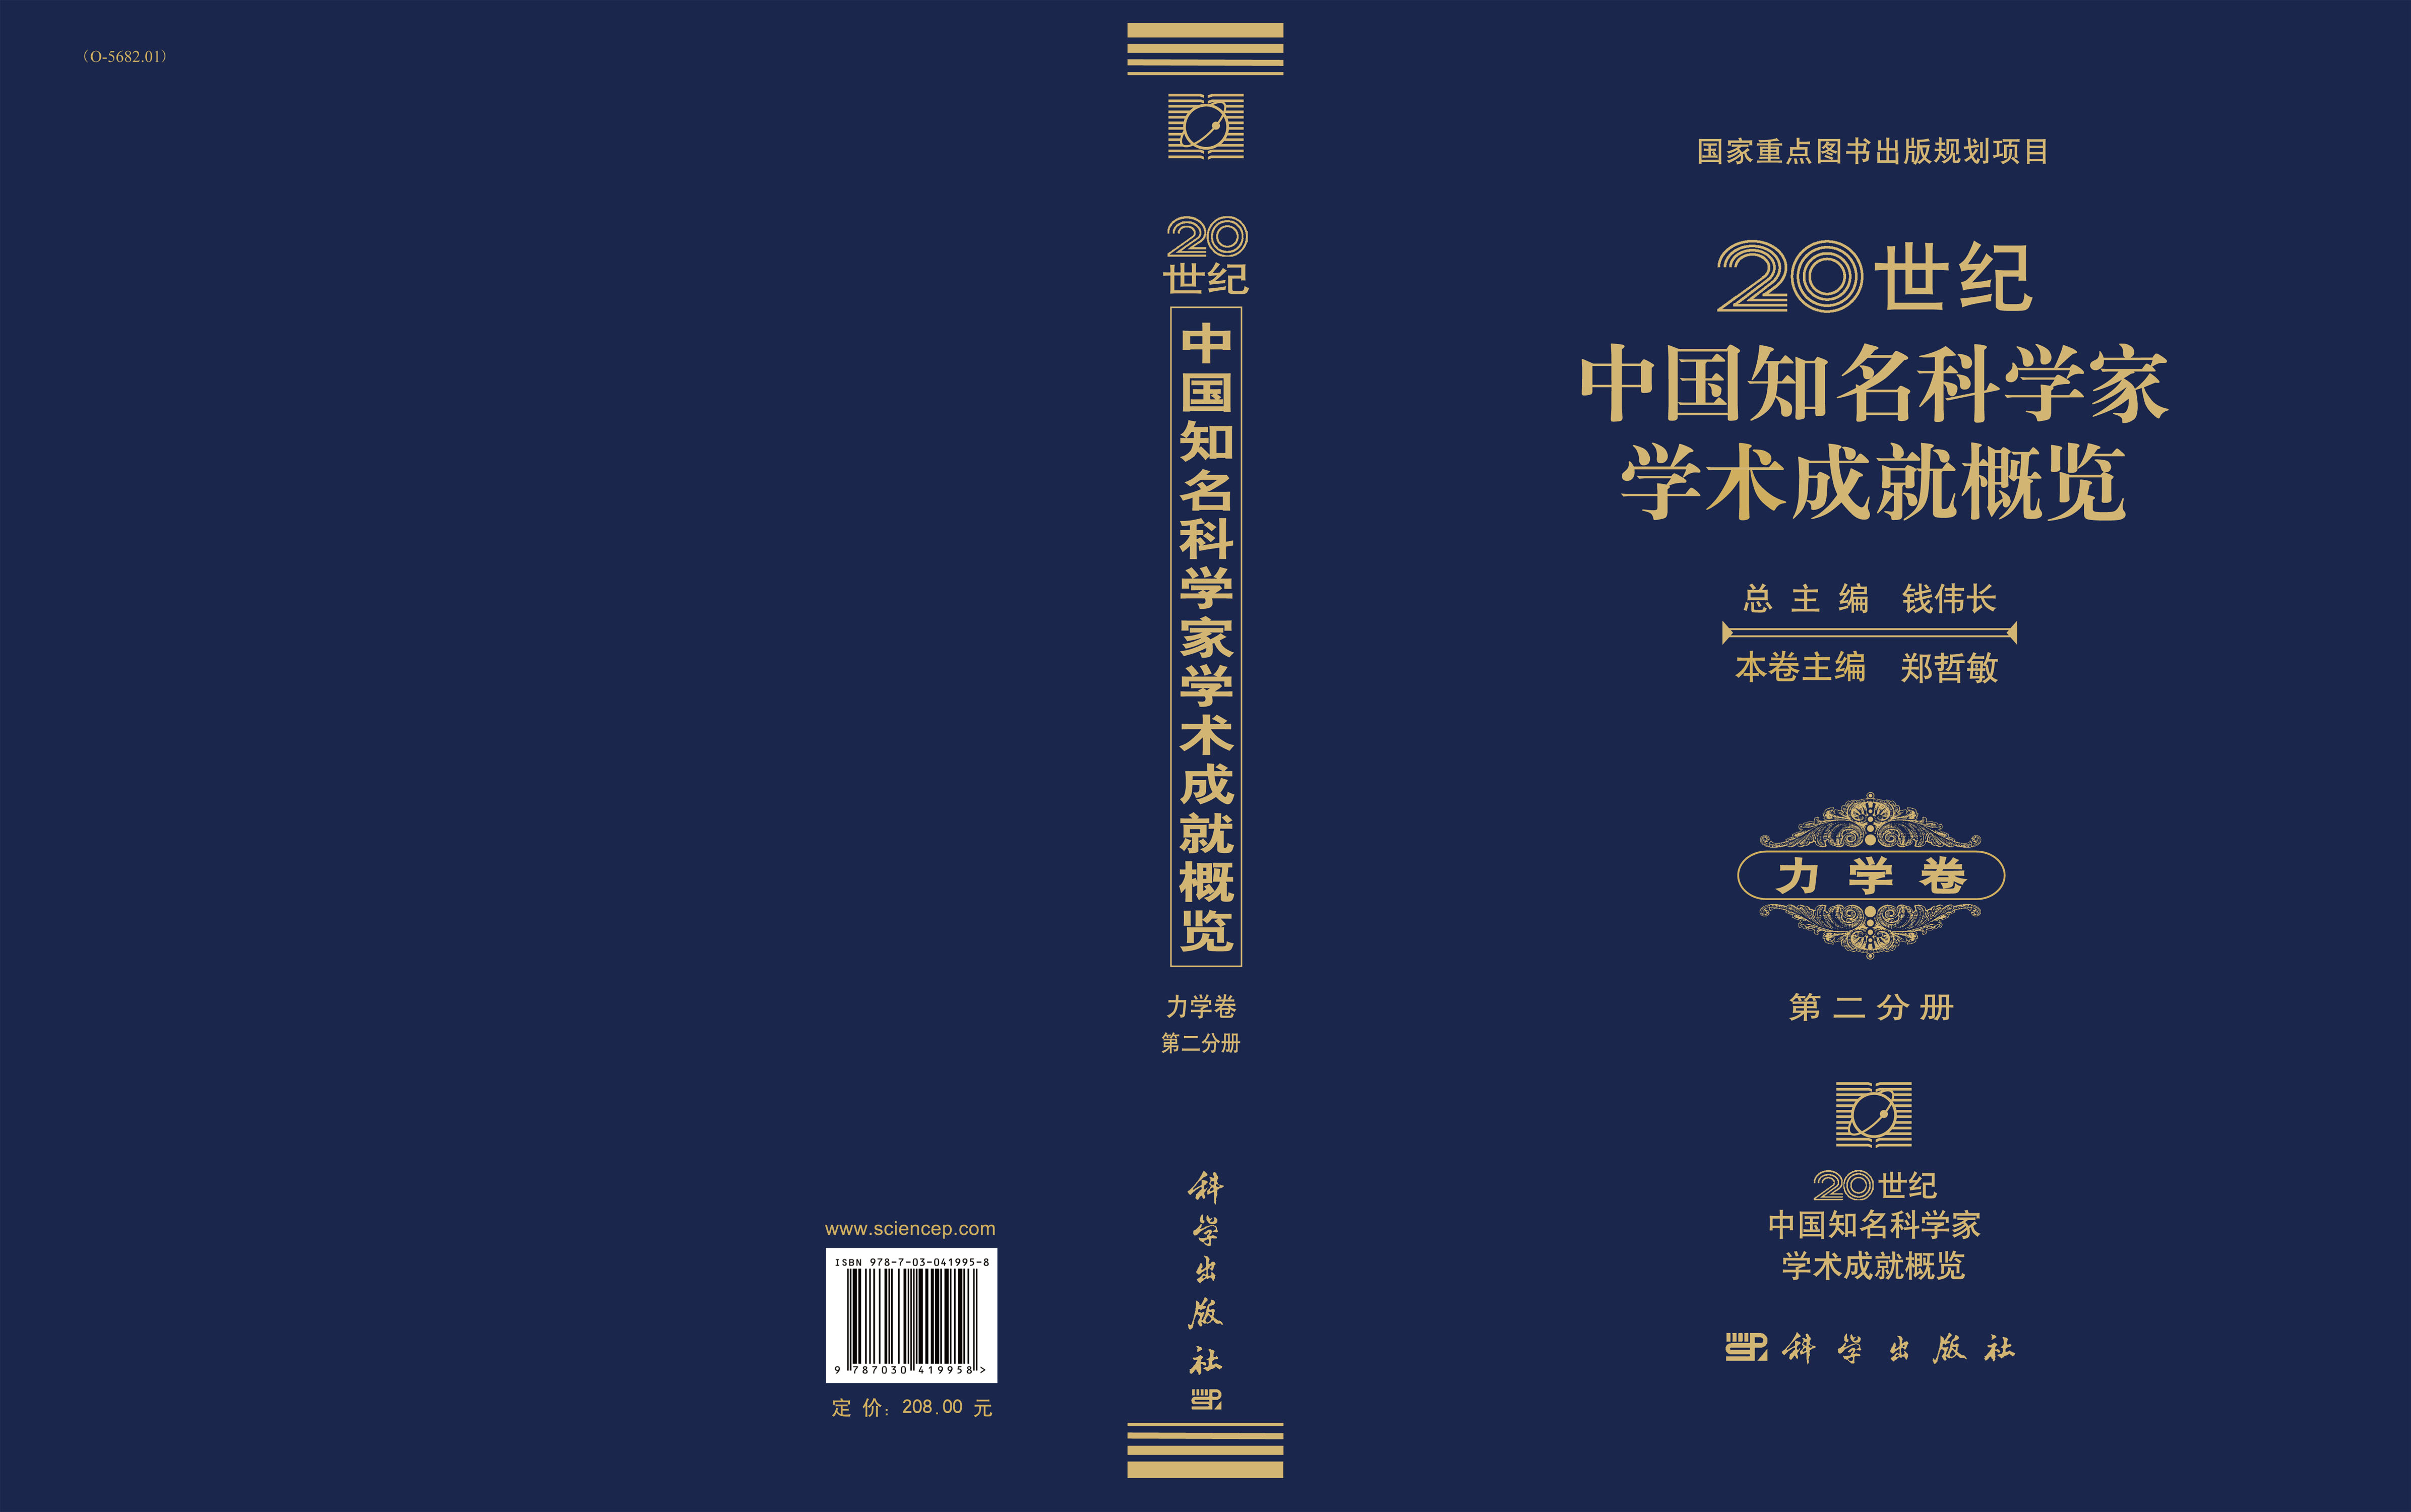 20世纪中国知名科学家学术成就概览・力学卷・第二分册